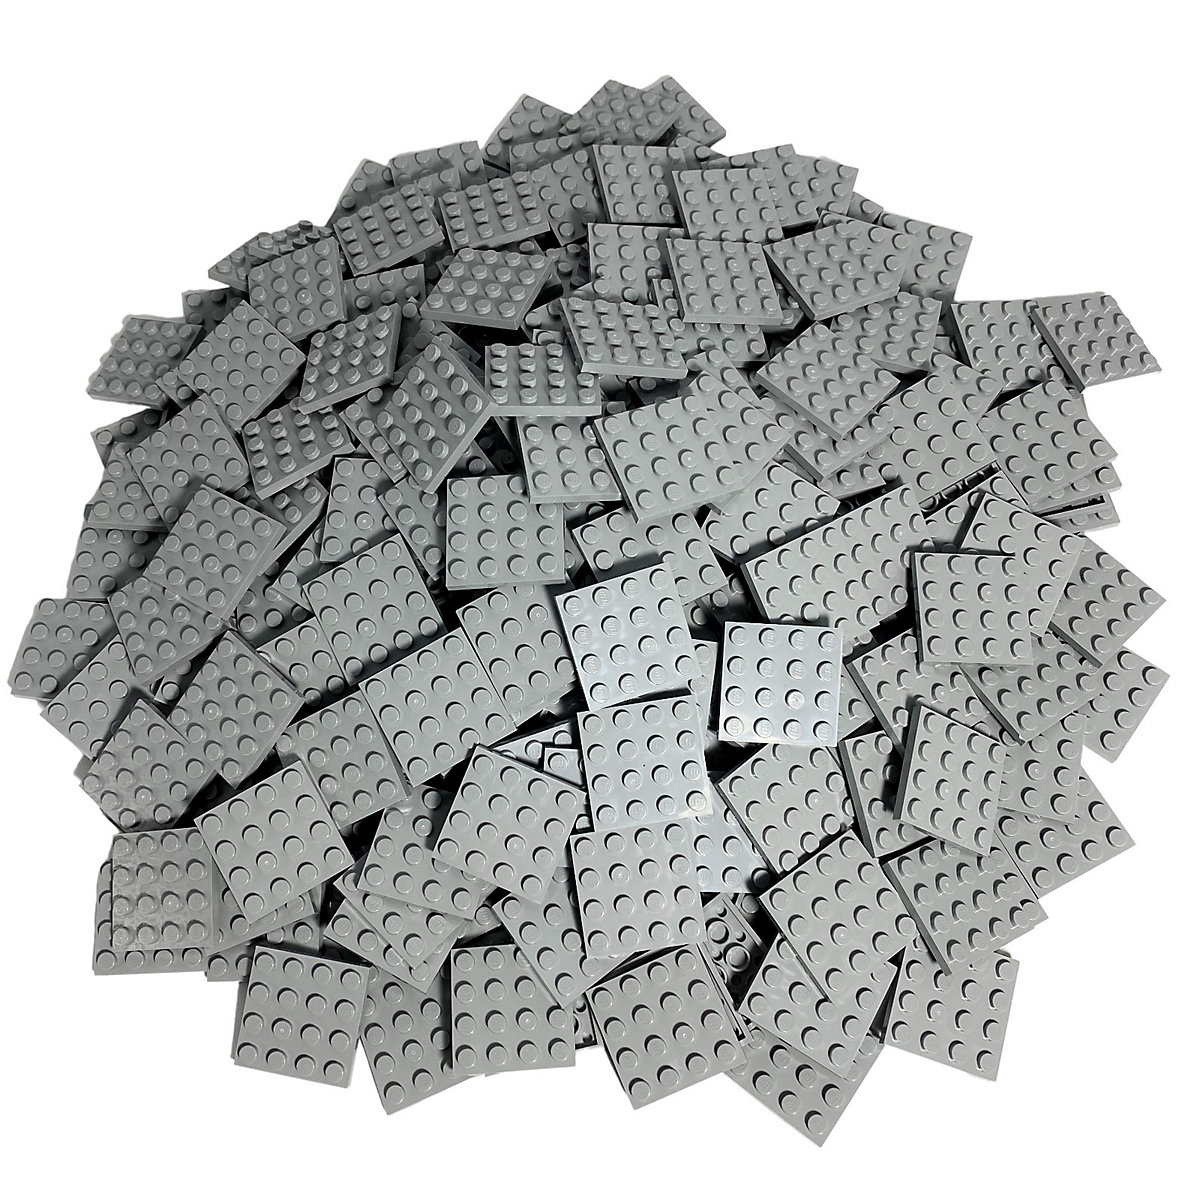 LEGO® Hellgraue 4x4 Platten flache Platten Light Bluish Grey Plate 3031 Stückzahl 100x